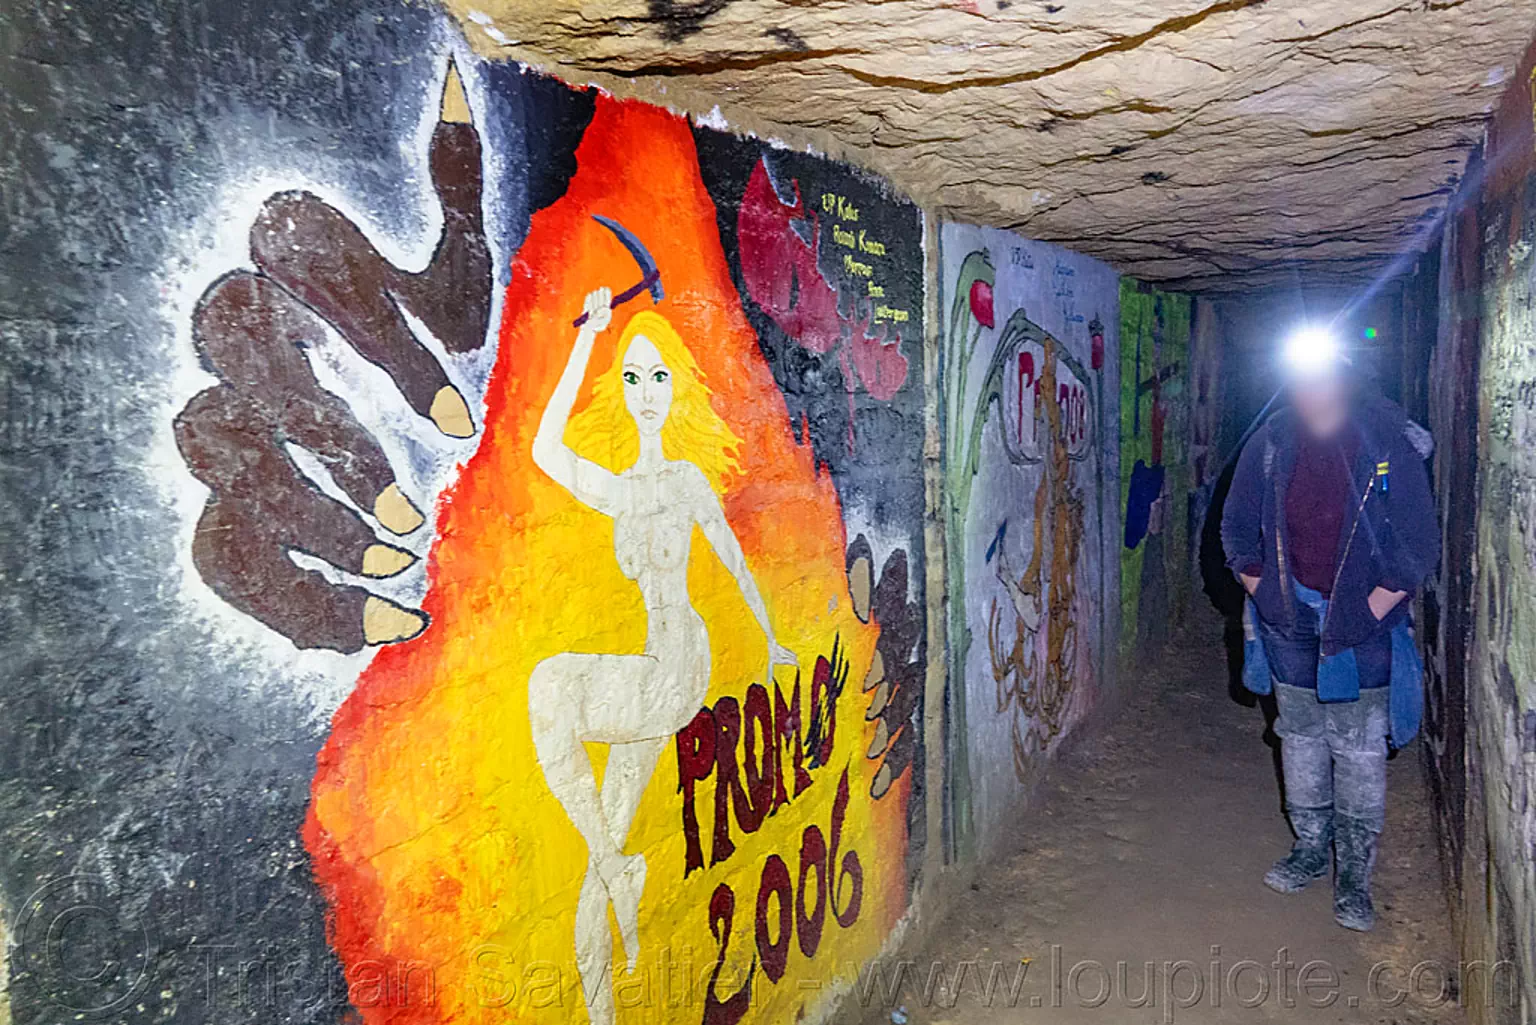 fresques de baptême des promotions de l'École des mines de paris - catacombes de paris - catacombs of paris (off-limit area), cataphile, cave, clandestines, ecole des mines, illegal, paris, trespassing, underground quarry